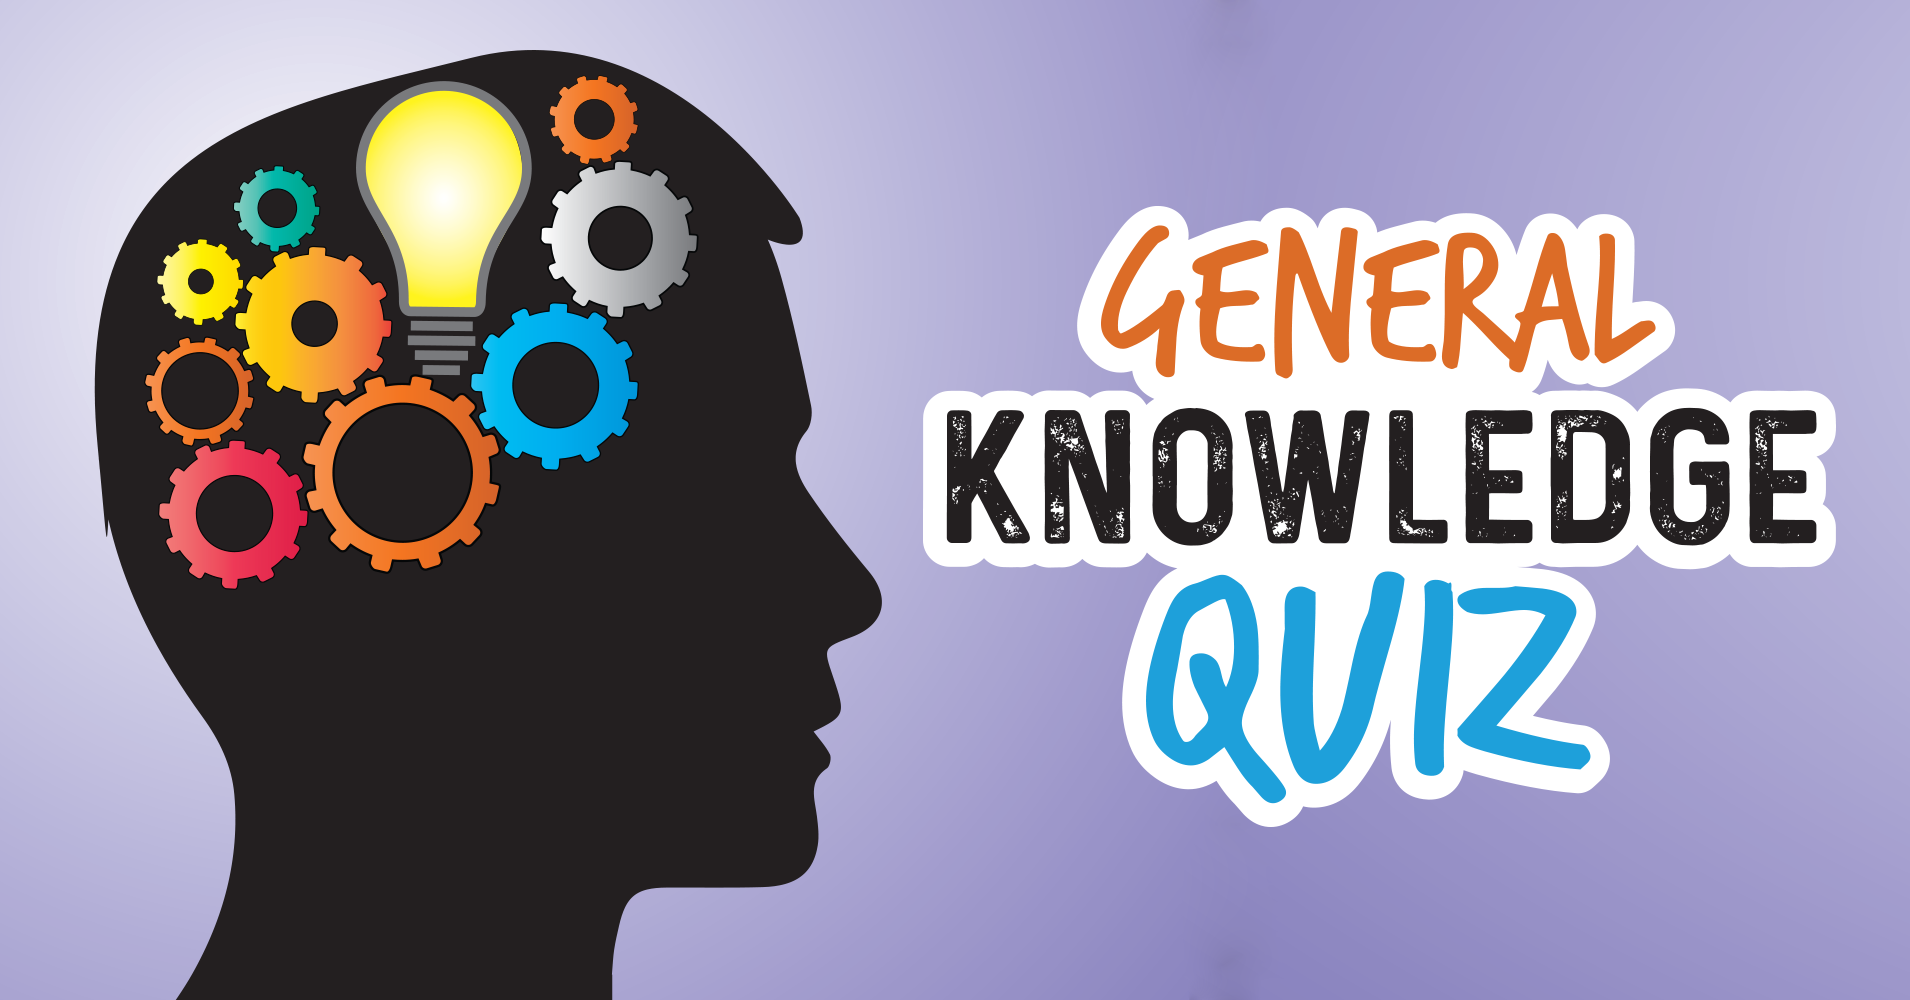 General Knowledge Classroom Quiz Reverasite